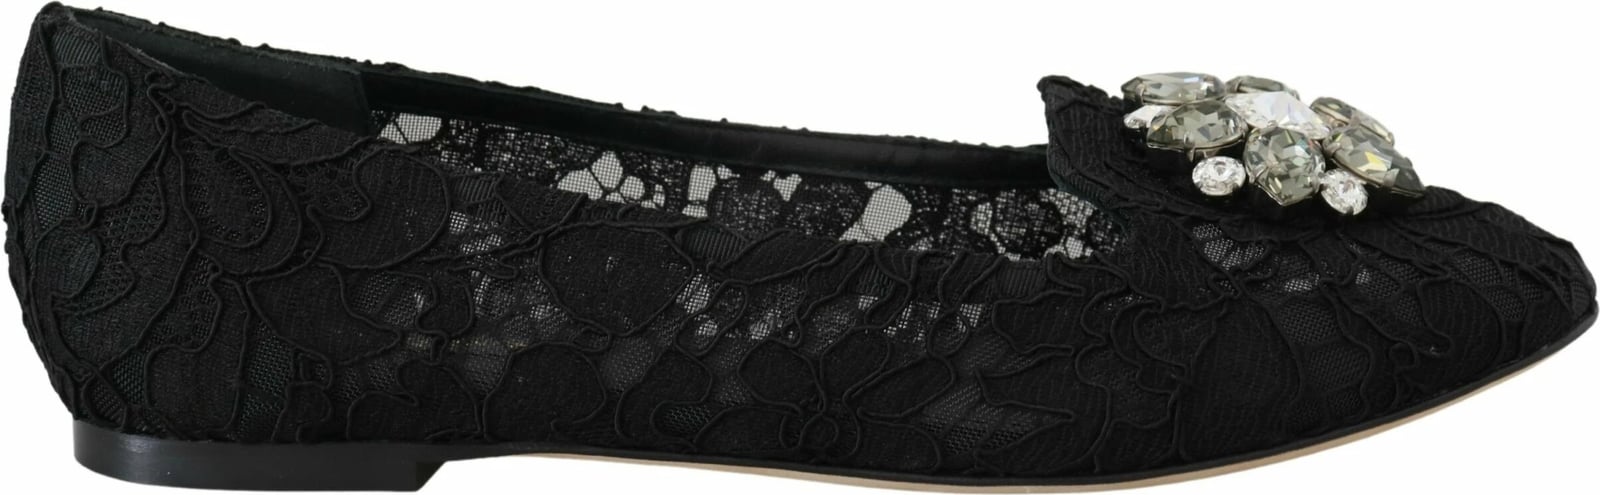 Këpucë për femra Dolce & Gabbana, të zeza